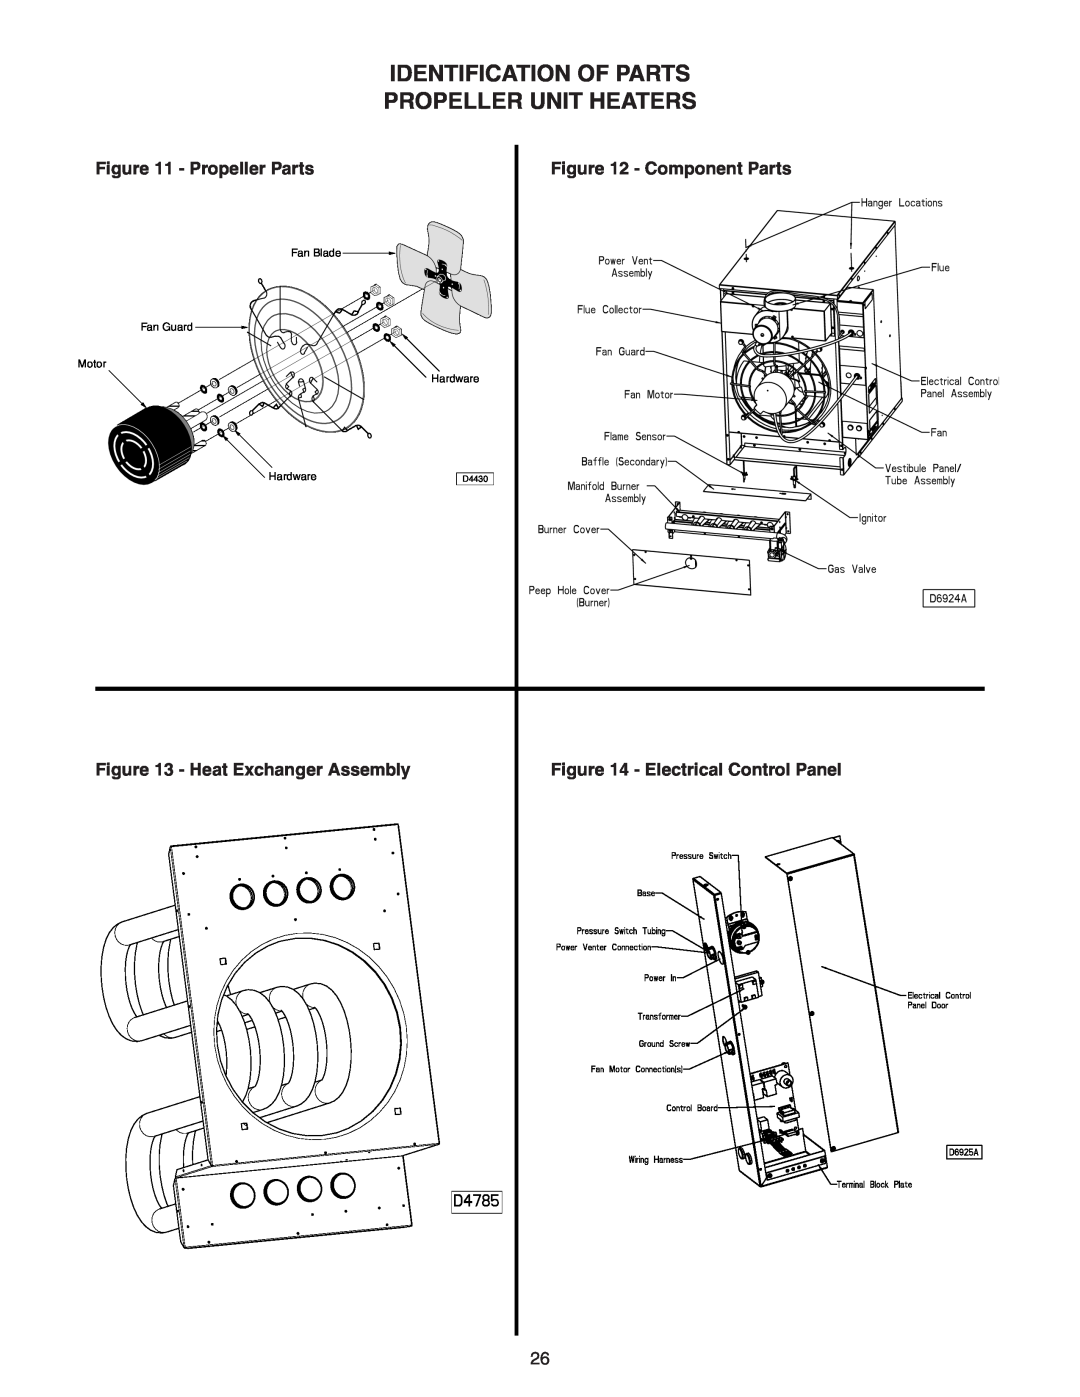 Sterling TF-300 Identification Of Parts Propeller Unit Heaters, Electrical Control Panel, Fan Blade, Fan Guard, Motor 